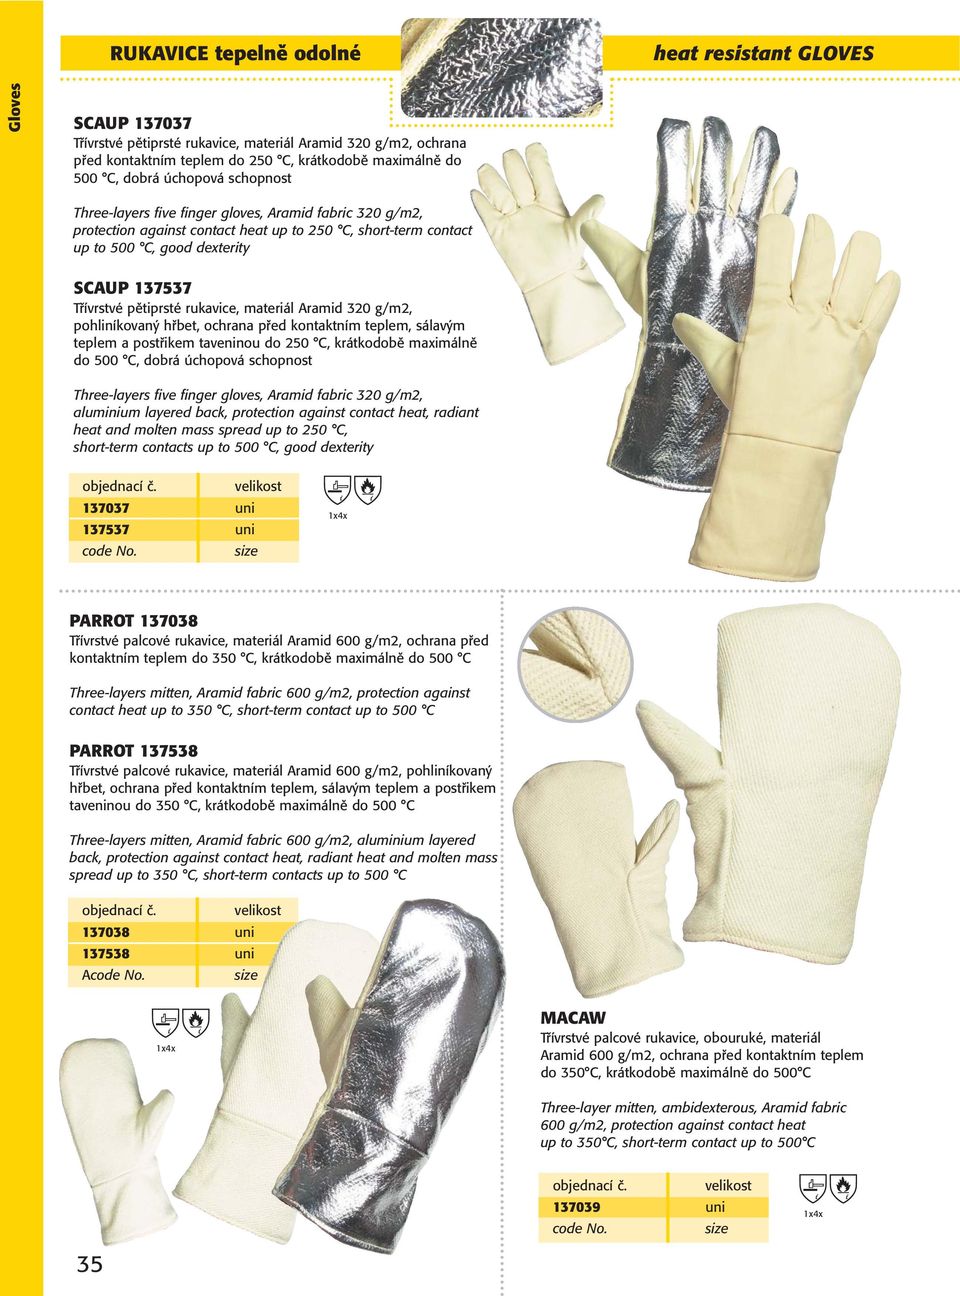 pětiprsté rukavice, materiál Aramid 320 g/m2, pohliníkovaný hřbet, ochrana před kontaktním teplem, sálavým teplem a postřikem taveninou do 250 C, krátkodobě maximálně do 500 C, dobrá úchopová